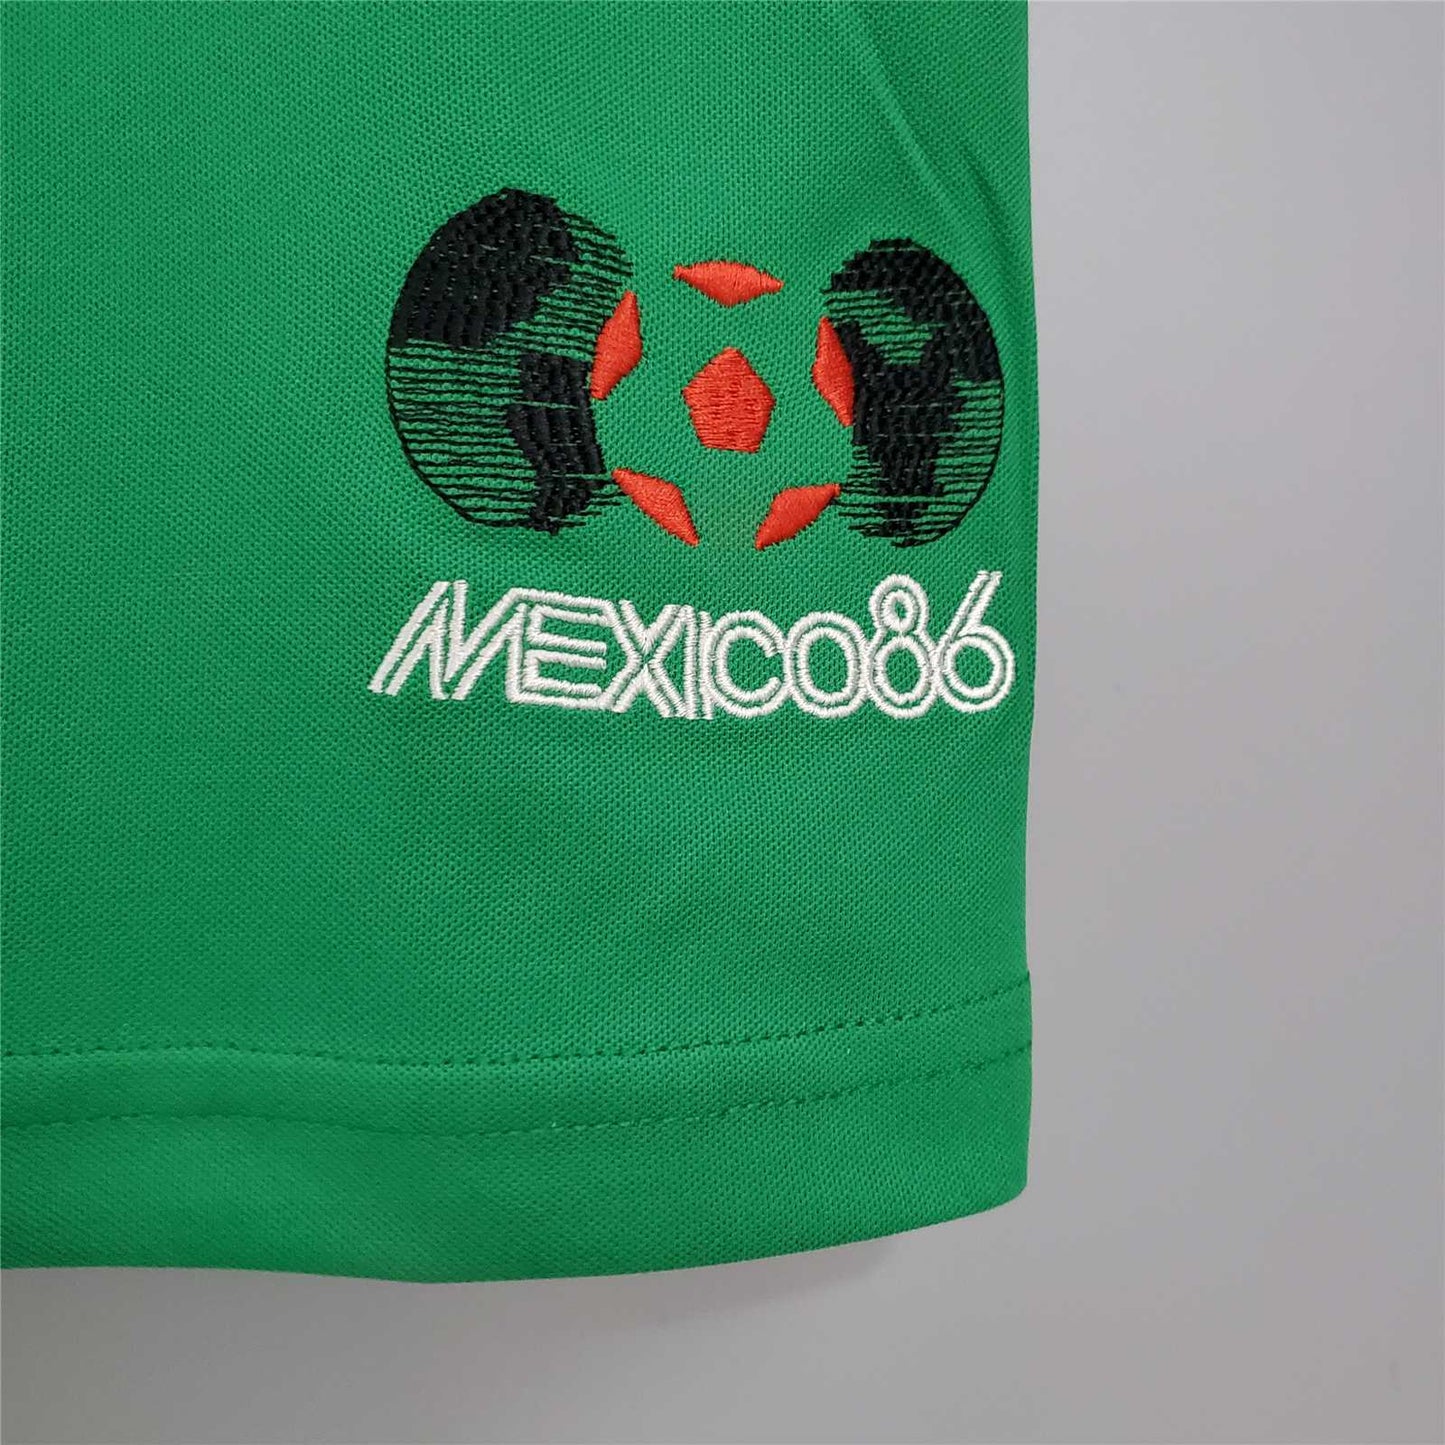 Mexico 1986 Home Shirt